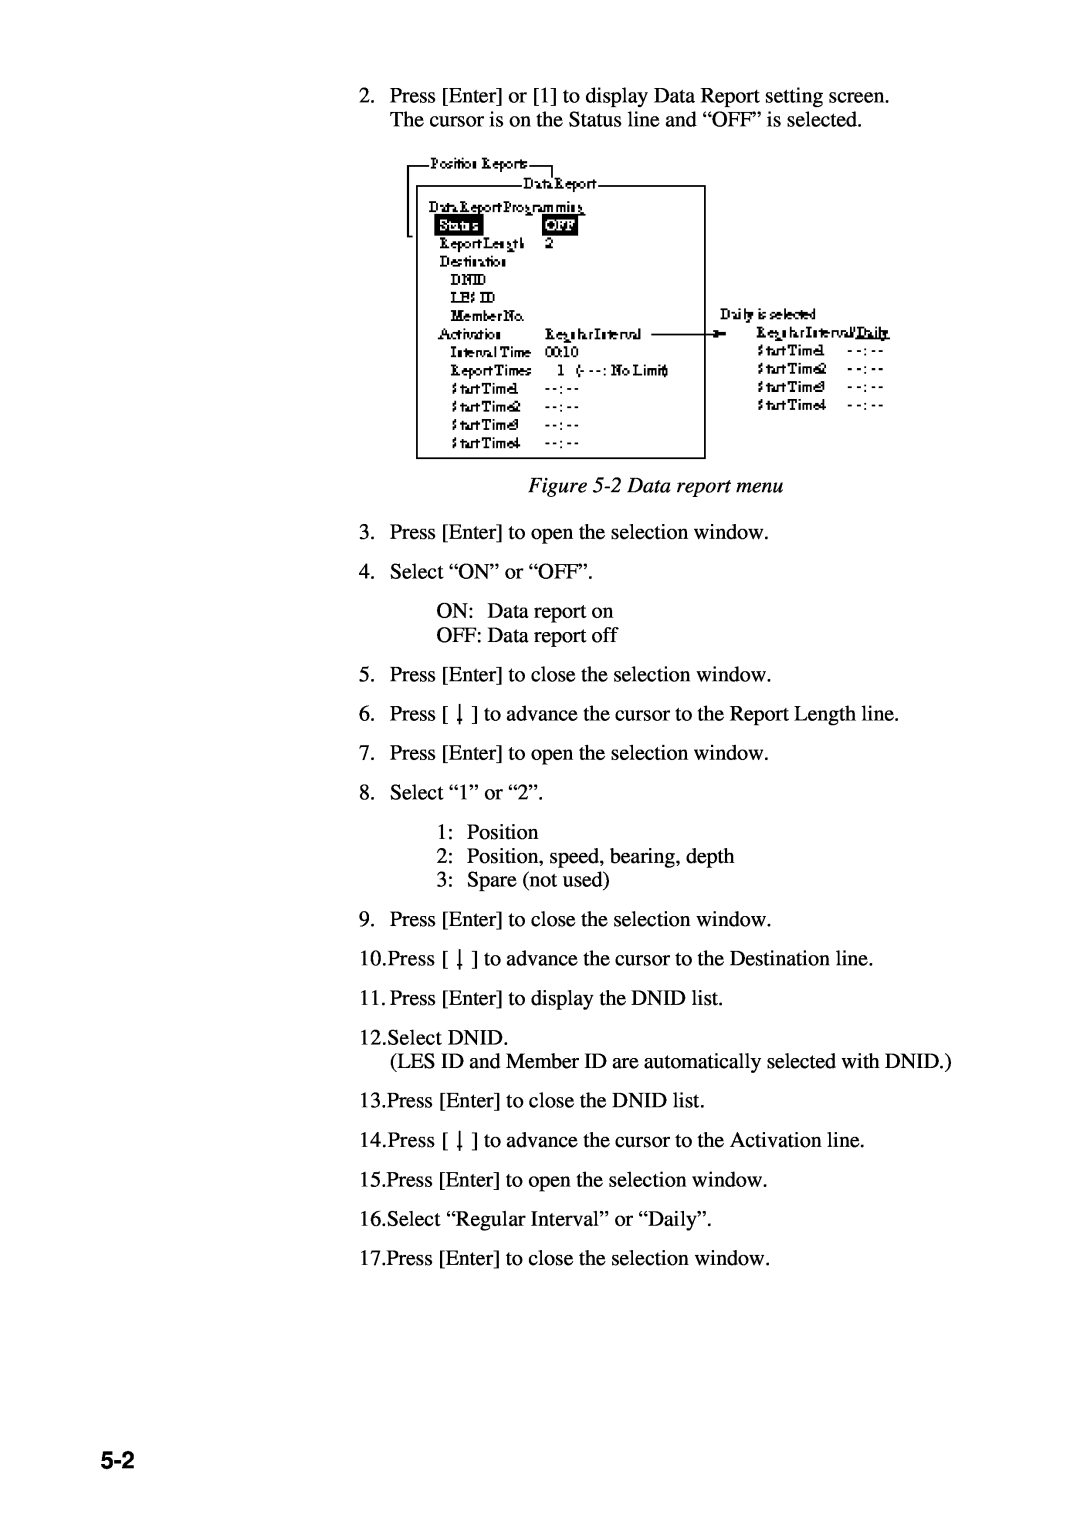 Furuno RC-1500-1T manual 2 Data report menu 